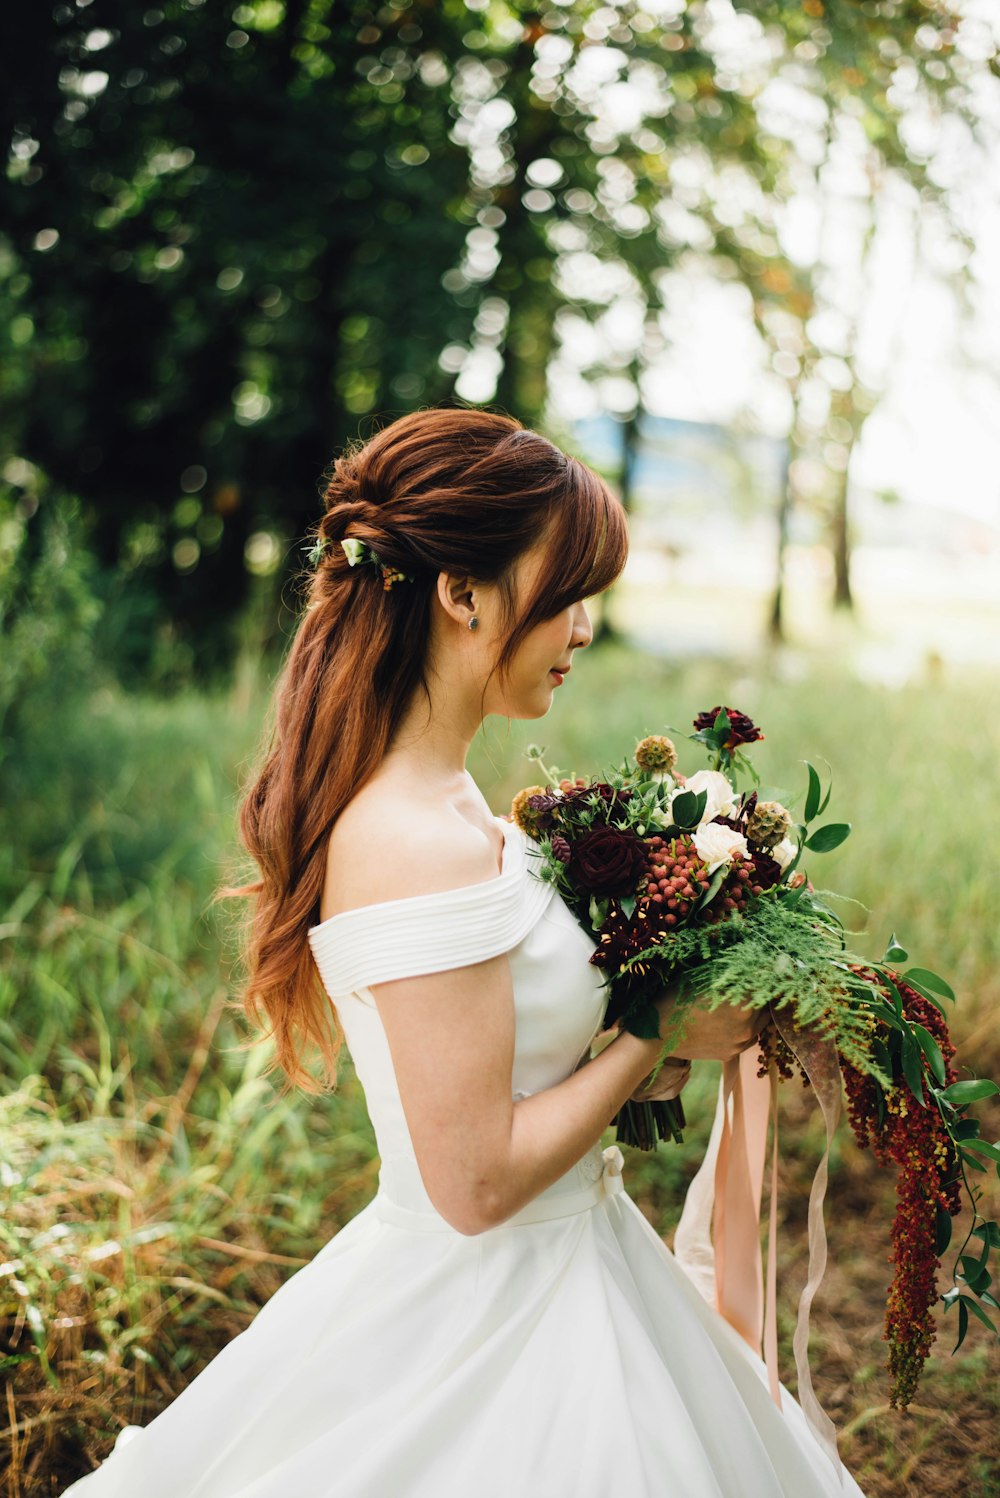 Mujer con vestido de novia blanco con hombros descubiertos con flor de pétalos blancos